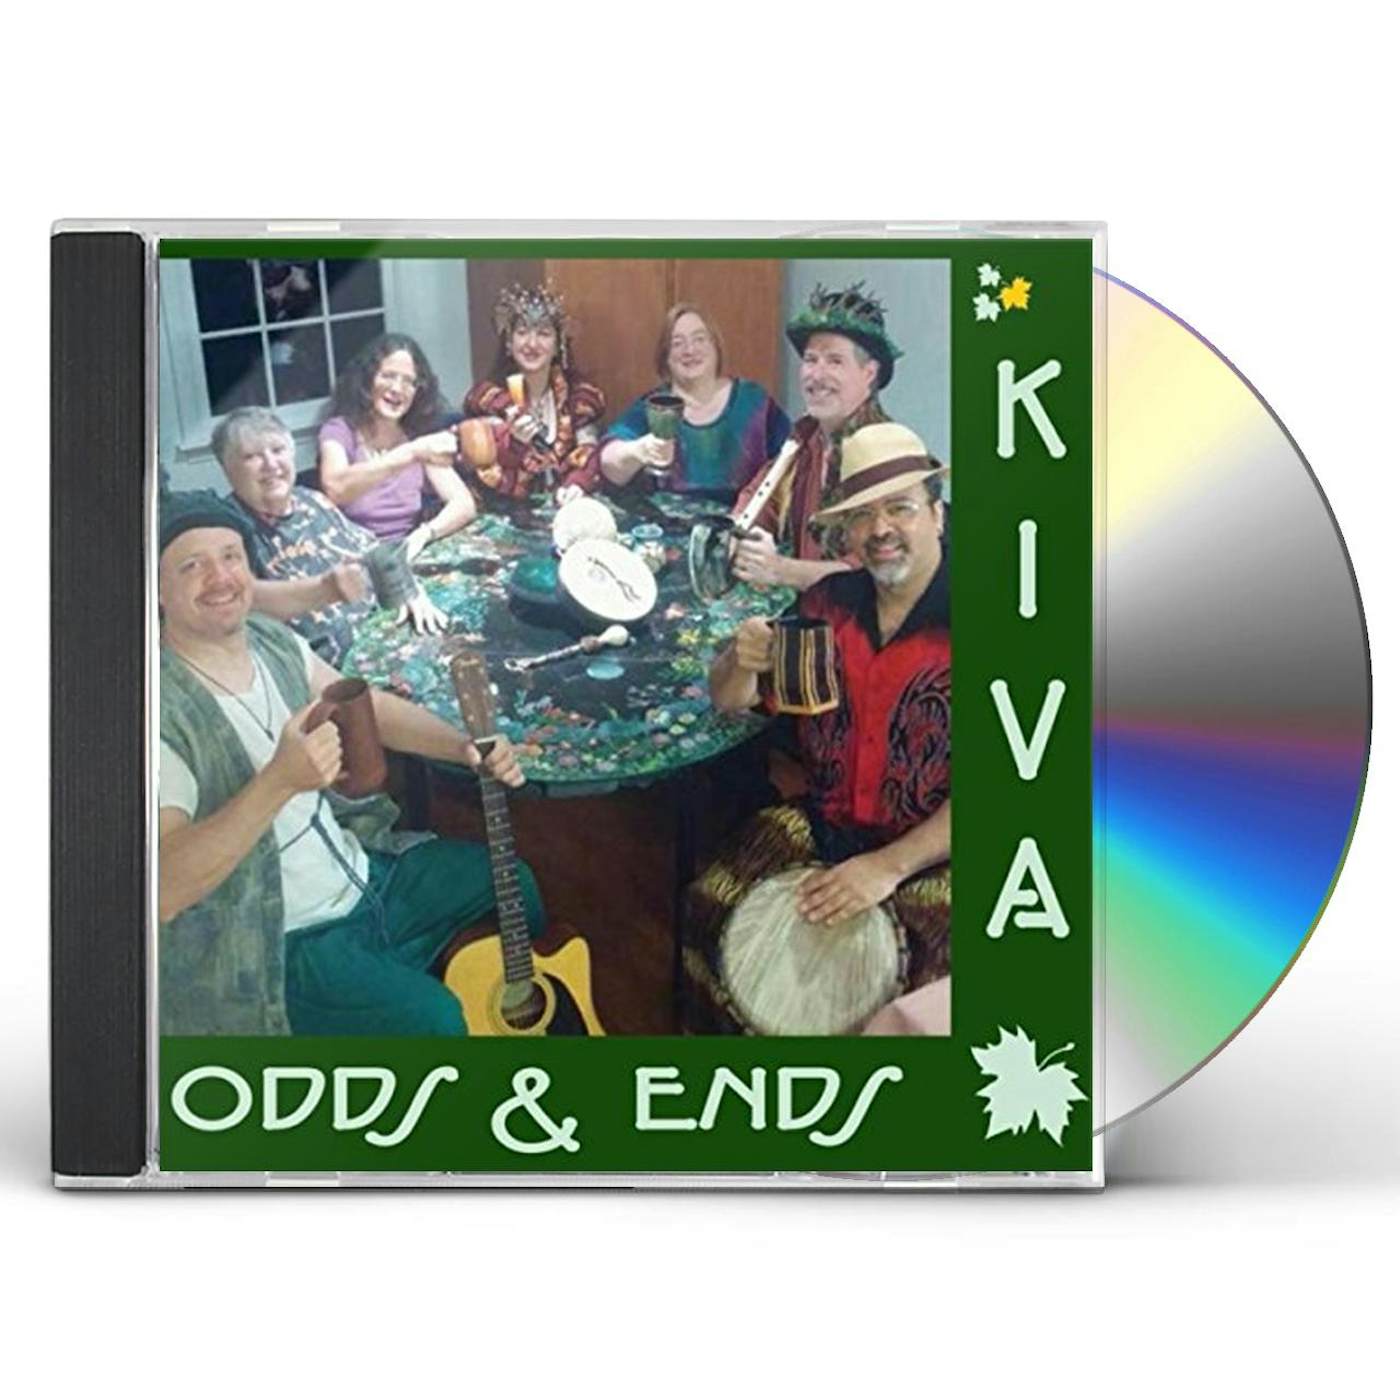 KIVA ODDS & ENDS CD